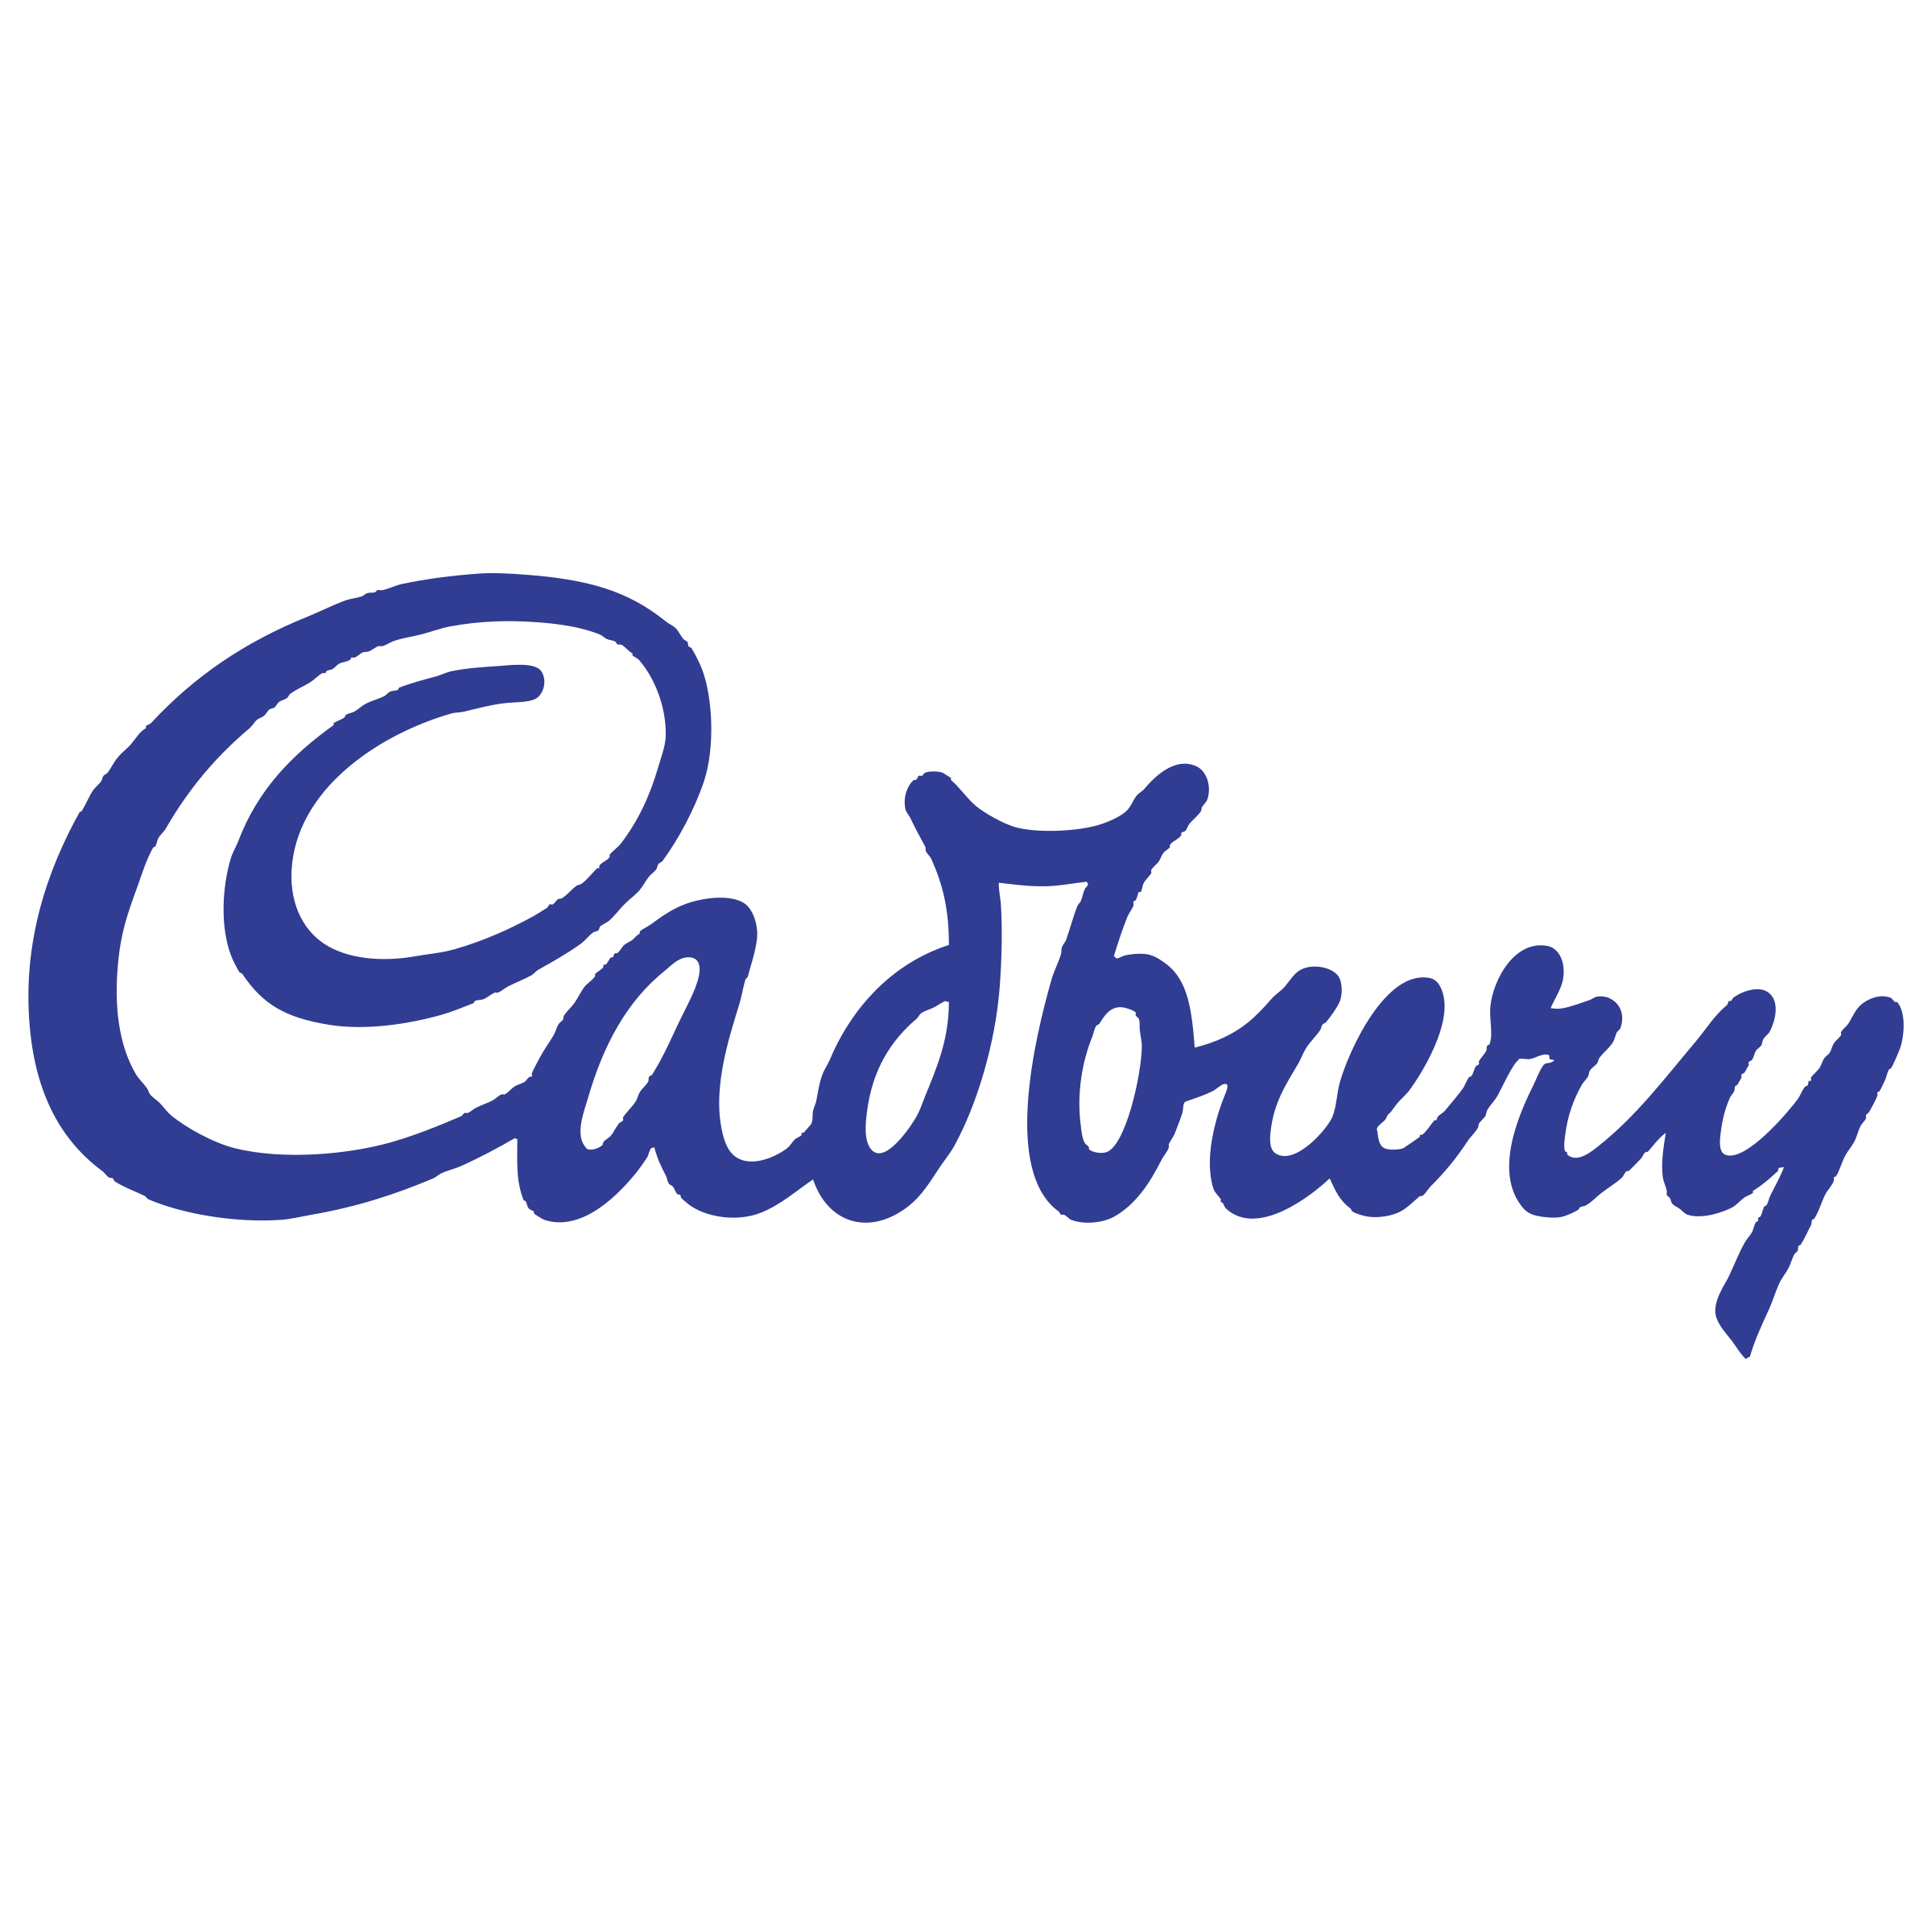 cadbury-logo-png-transparent.png